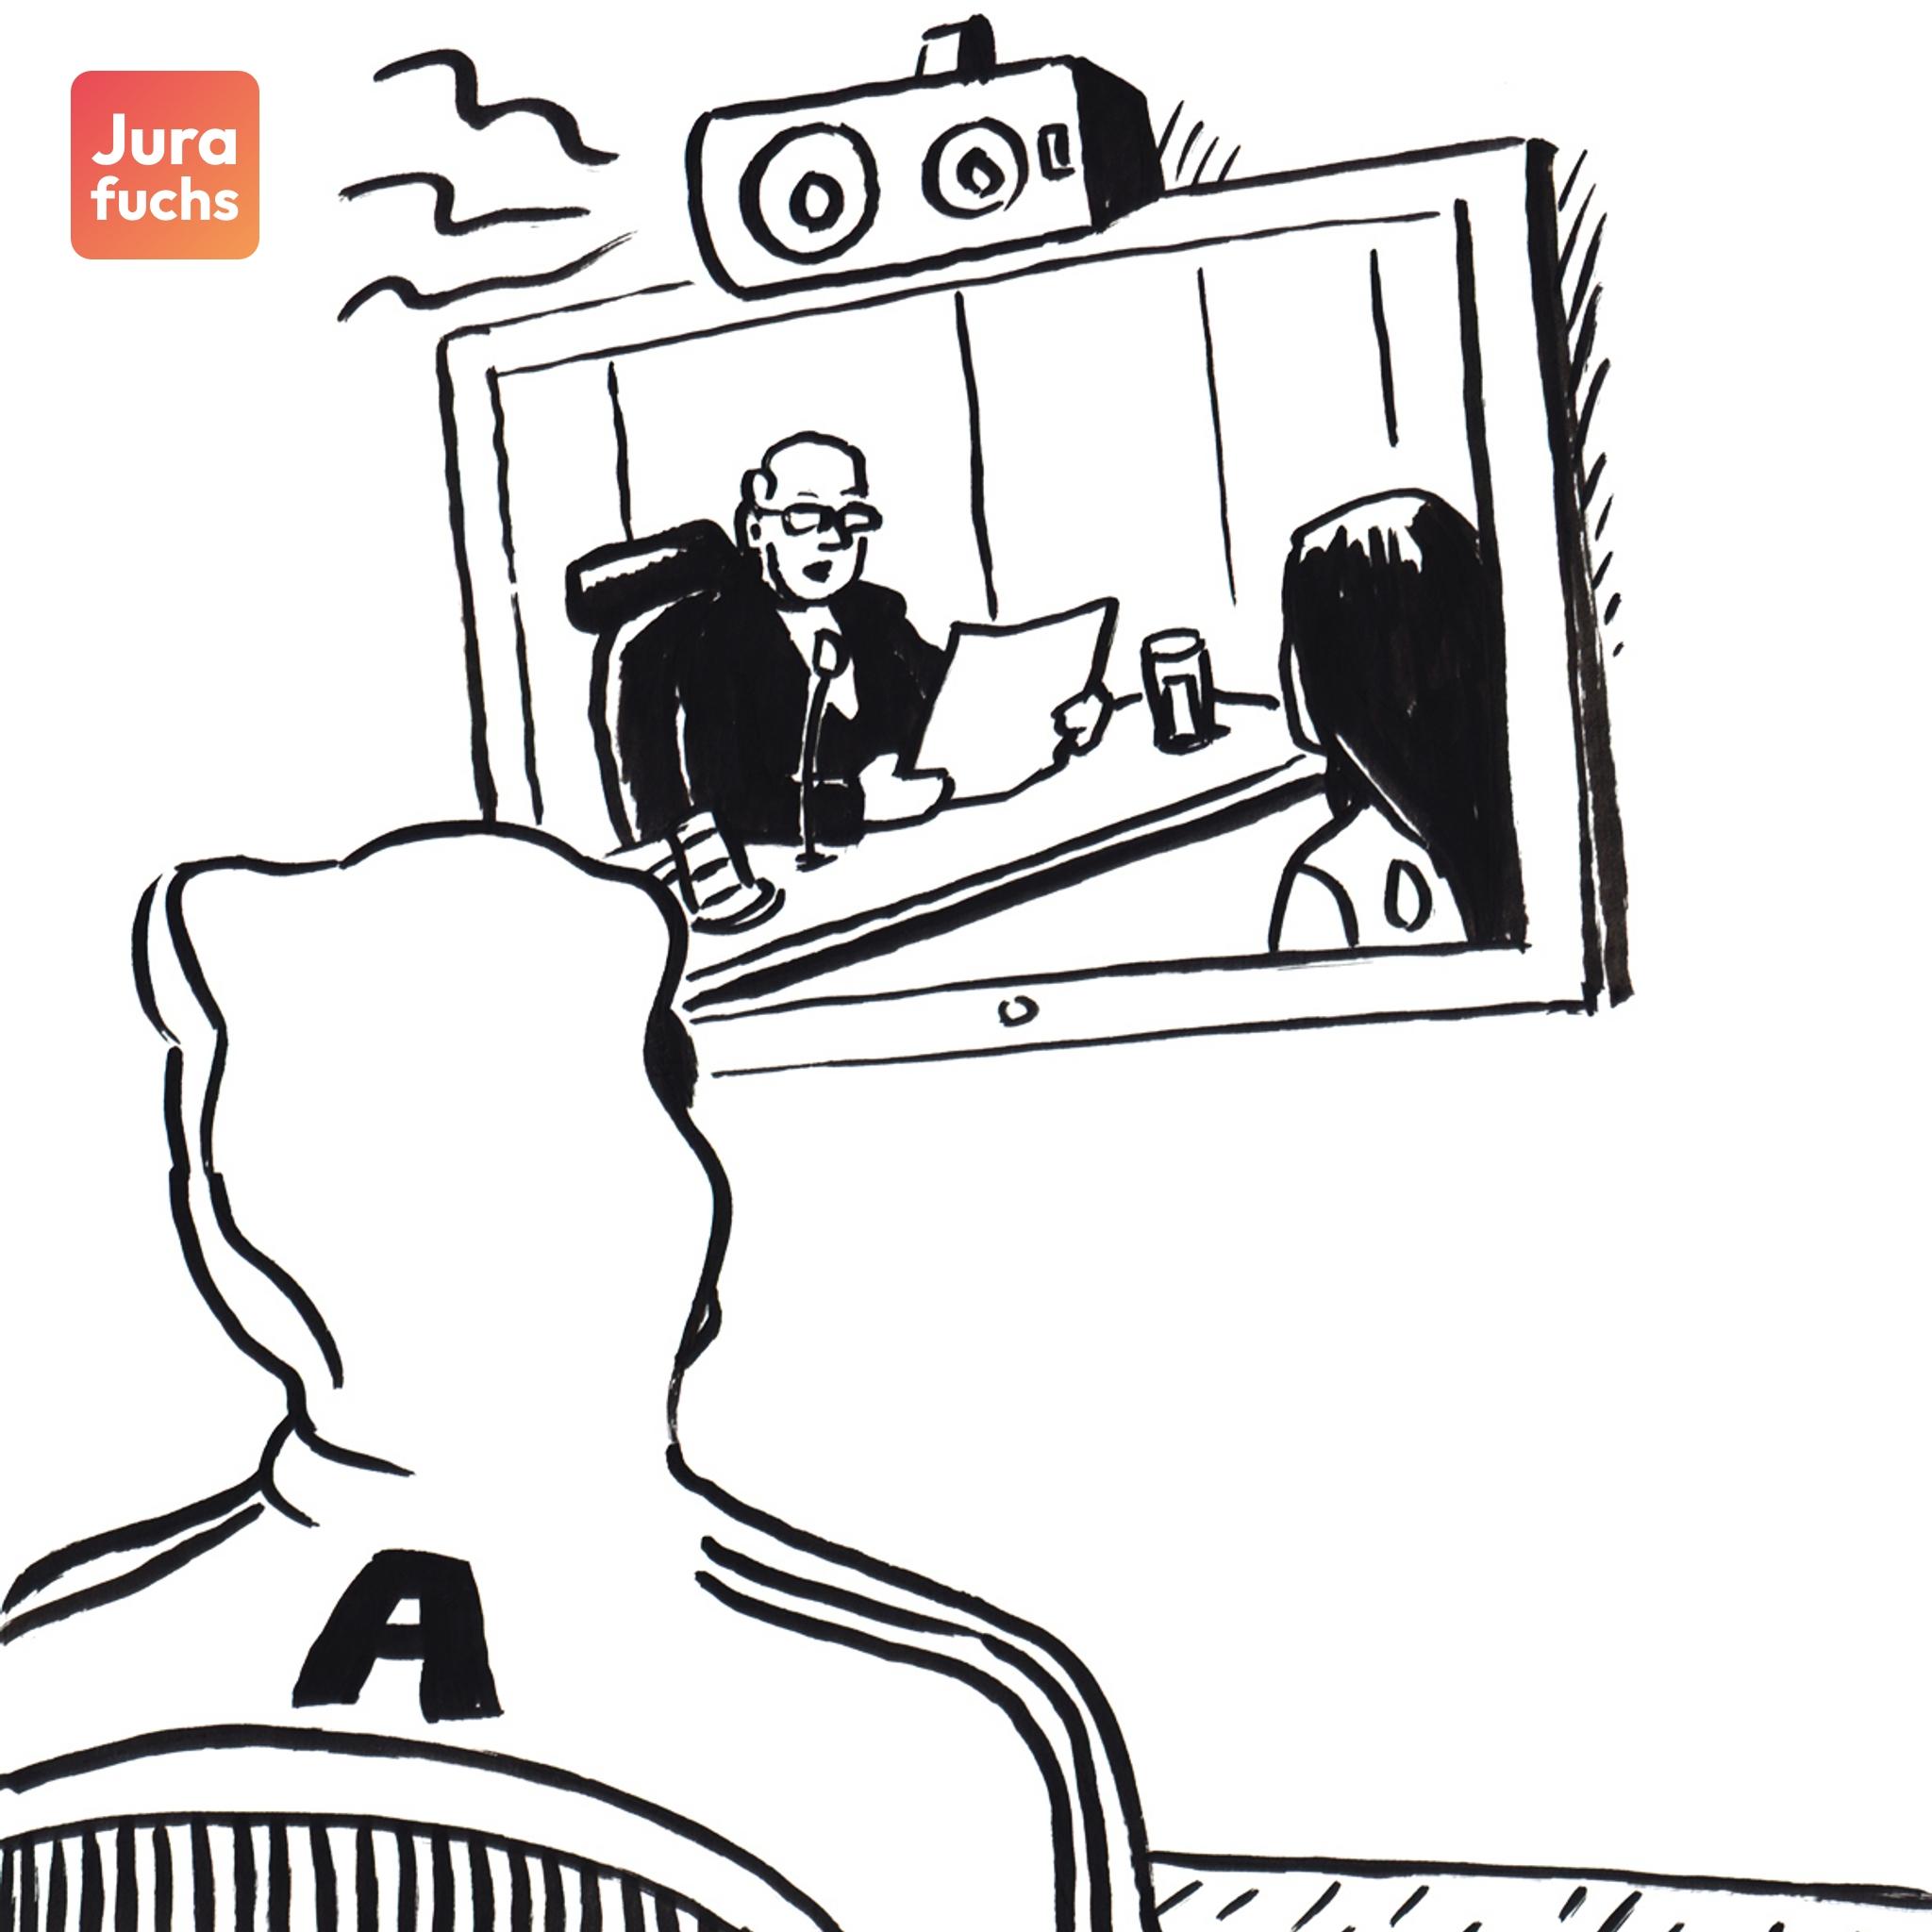 Jurafuchs Illustration: Angeklagter A sieht über eine Videoübertragung zu, wie eine Urkunde ohne seine Anwesenheit in der Hauptverhandlung vorgelesen wird. 